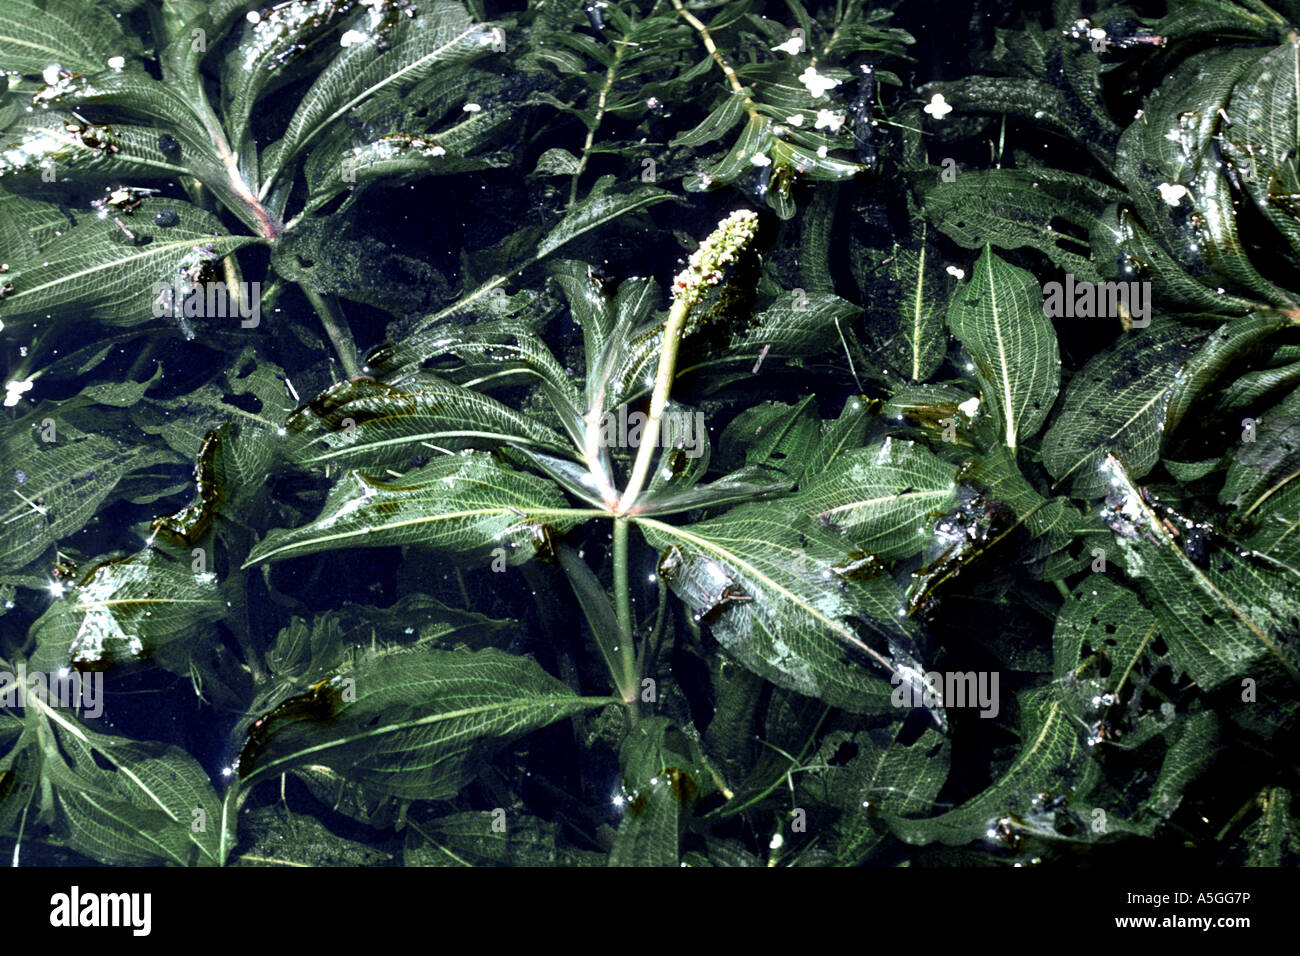 shining pondweed (Potamogeton lucens), blooming Stock Photo